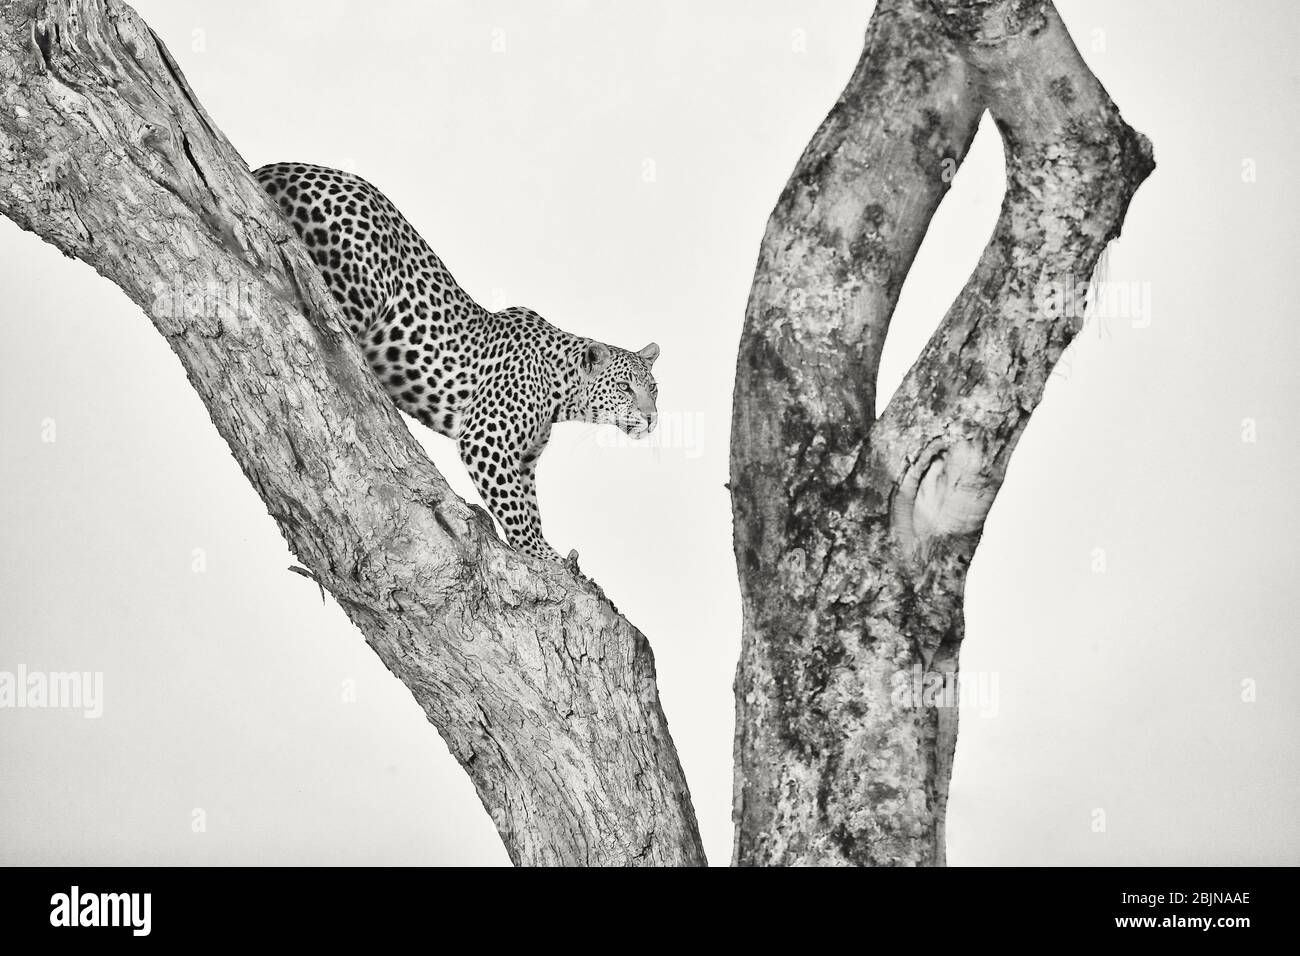 Un leopardo femminile che scende da un albero. Delta di Okavango, Botswana, Botsuana. Fotografia in bianco e nero Foto Stock